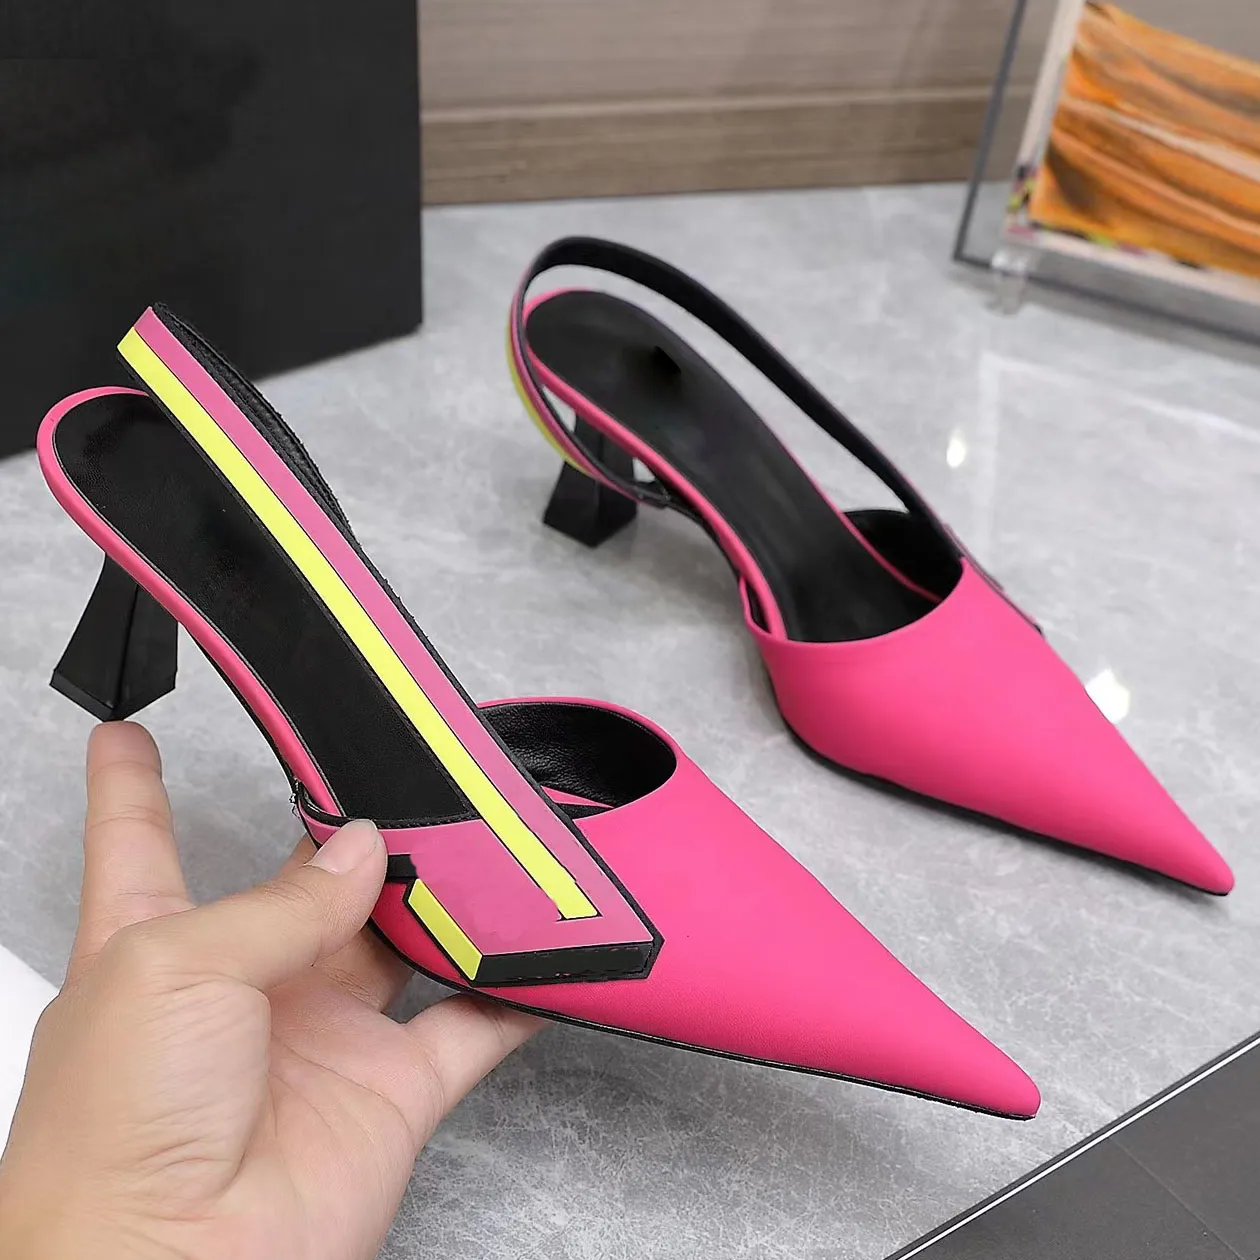 Été dames stiletto sandales de designer à talons hauts bout pointu belle mode talons hauts chaussures pour femmes design charmant